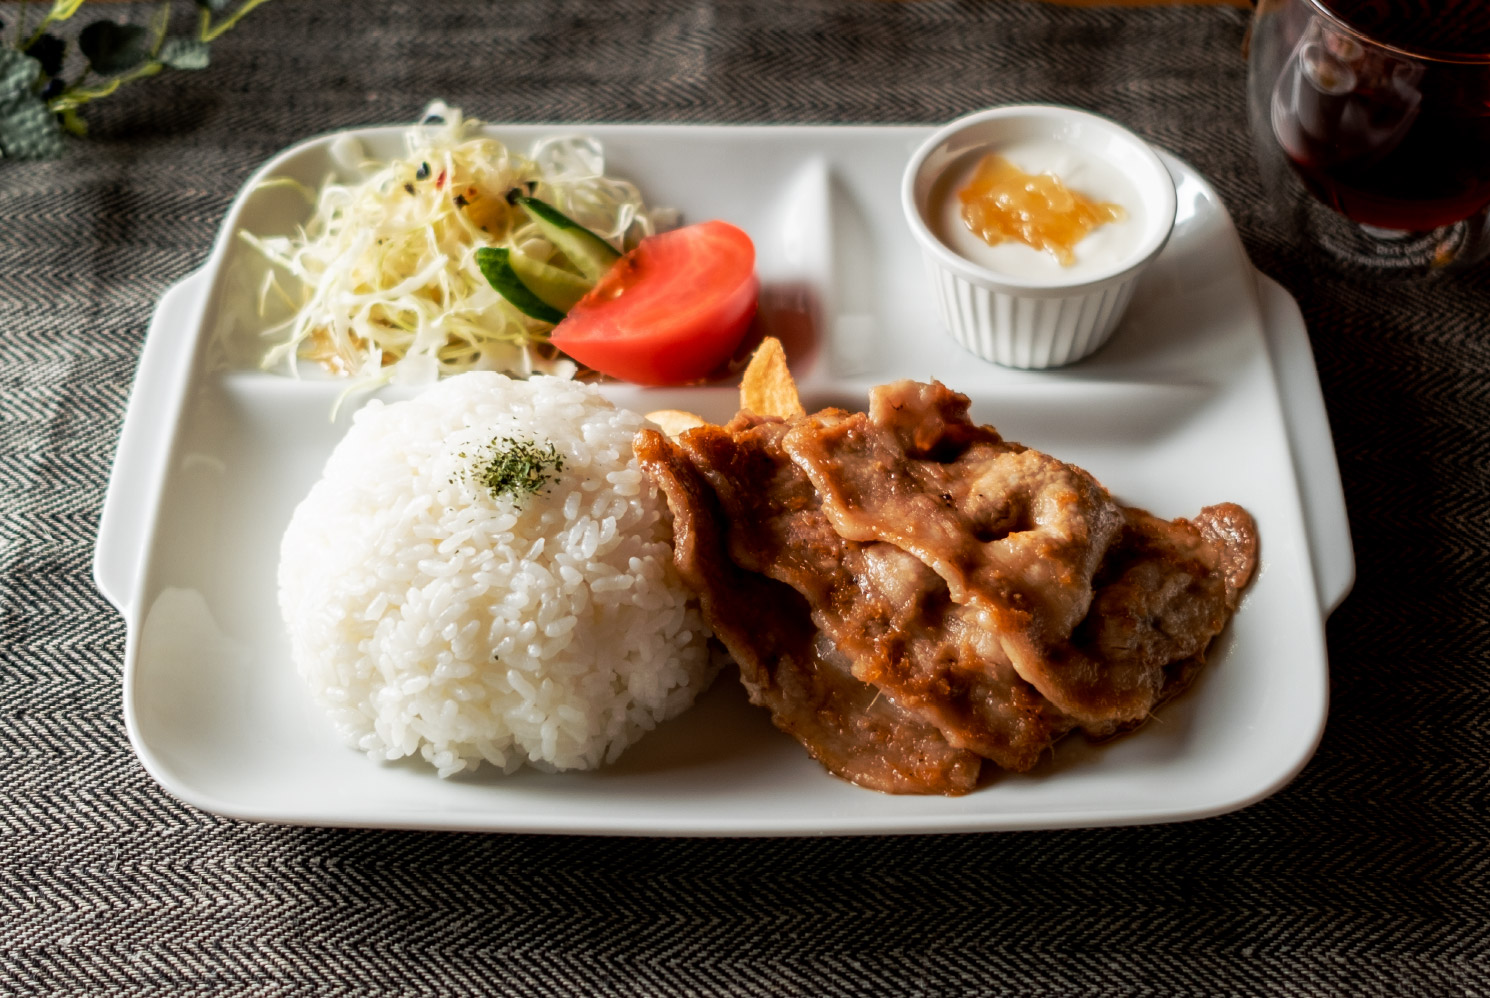 美瑛豚 生姜焼きランチ Stir-fry pork from BIEI 
with ginger